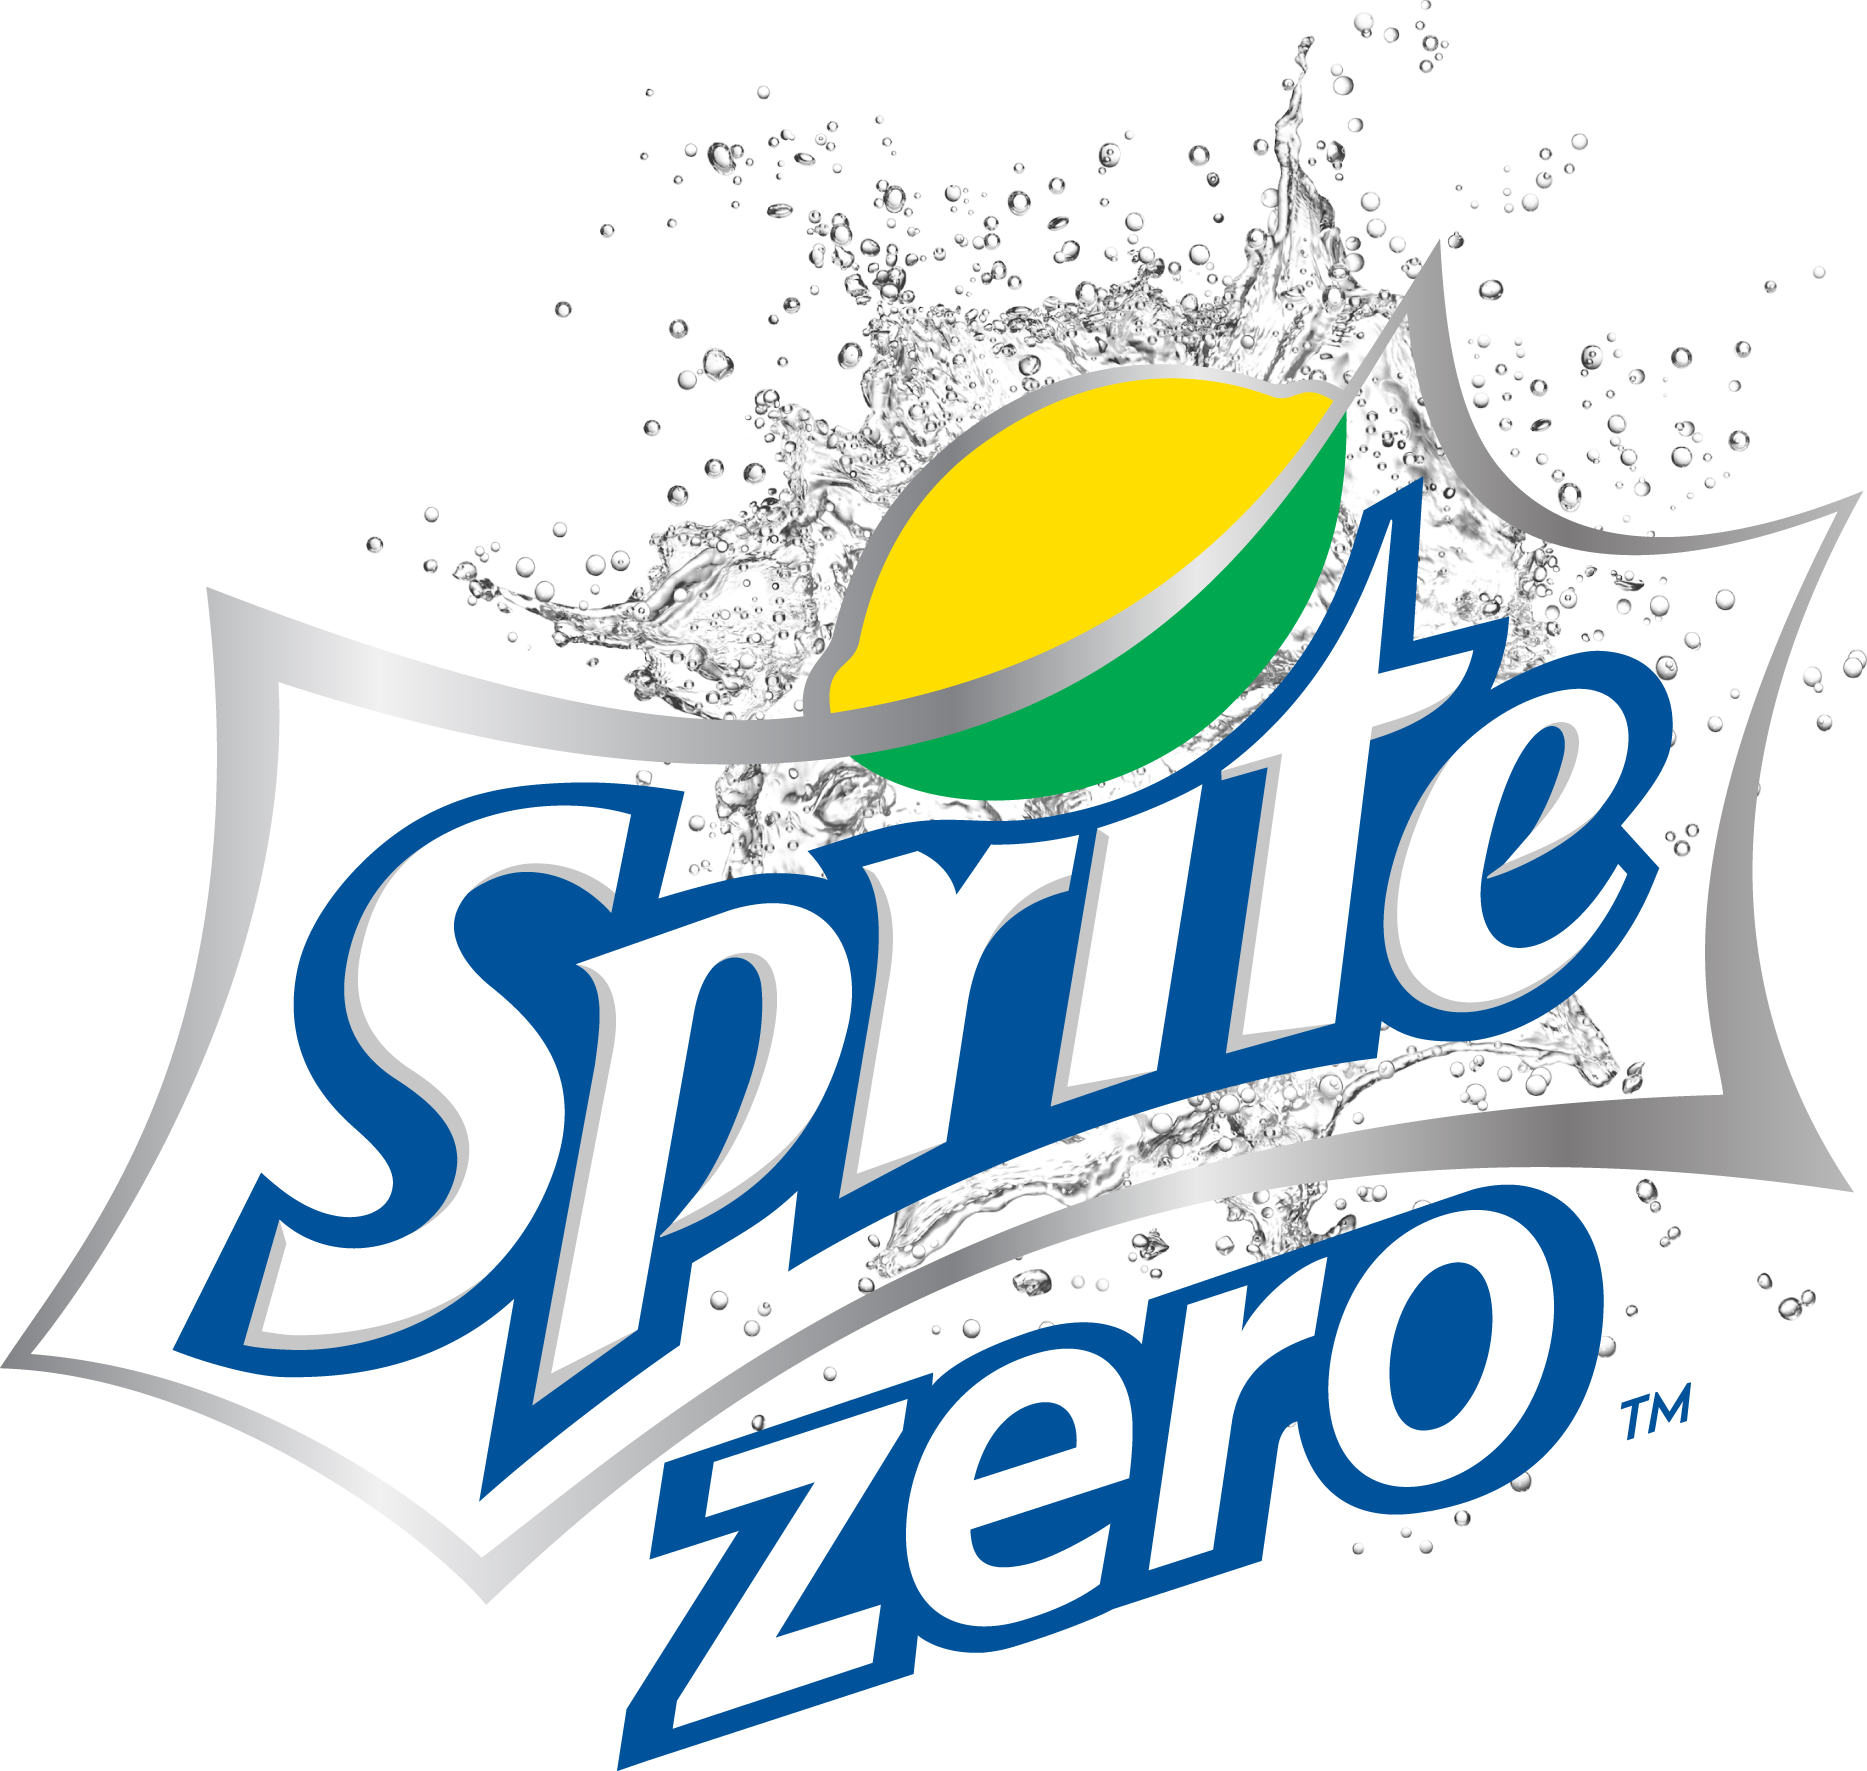 Sprite Zero | Logopedia | Fandom powered by Wikia